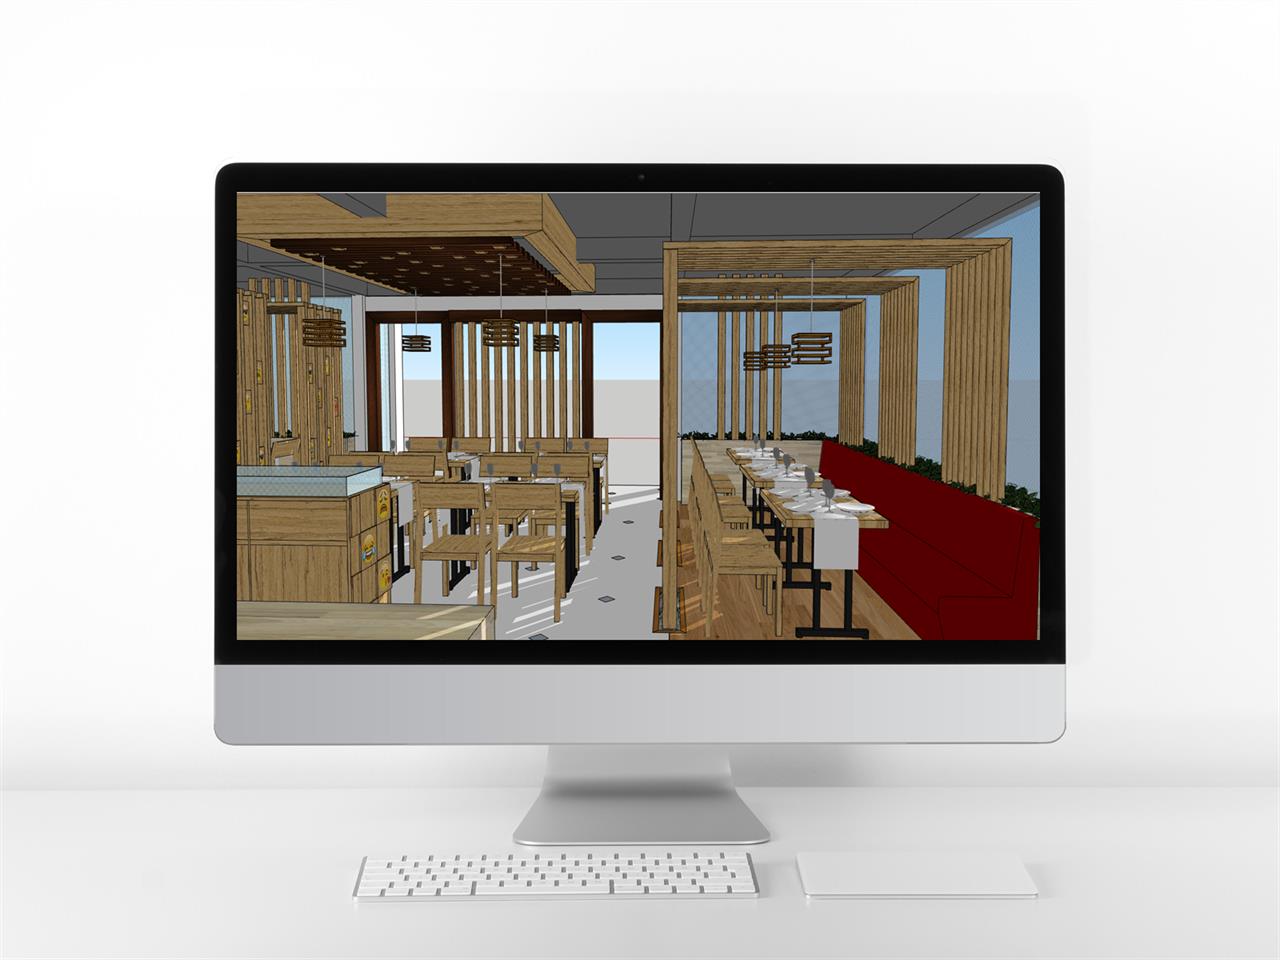 단정한 식당 디자인 웹툰배경 모델 제작 미리보기